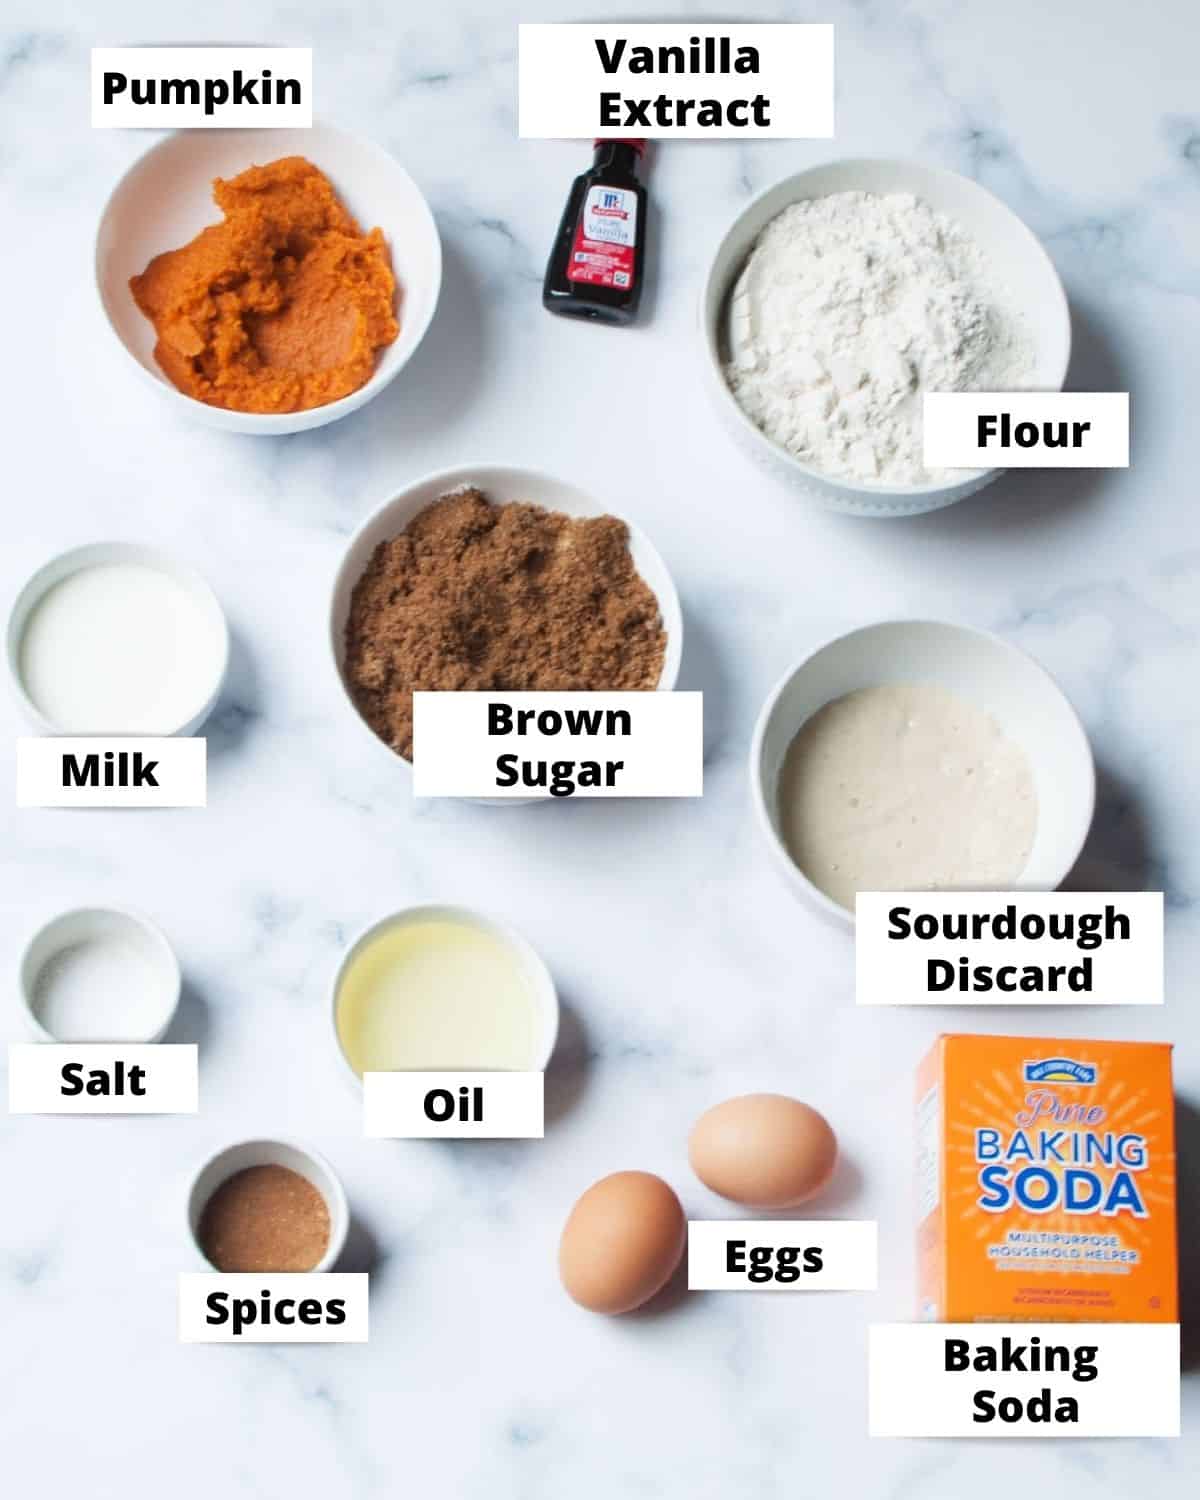 ingredients needed to make Sourdough Discard Pumpkin Muffins